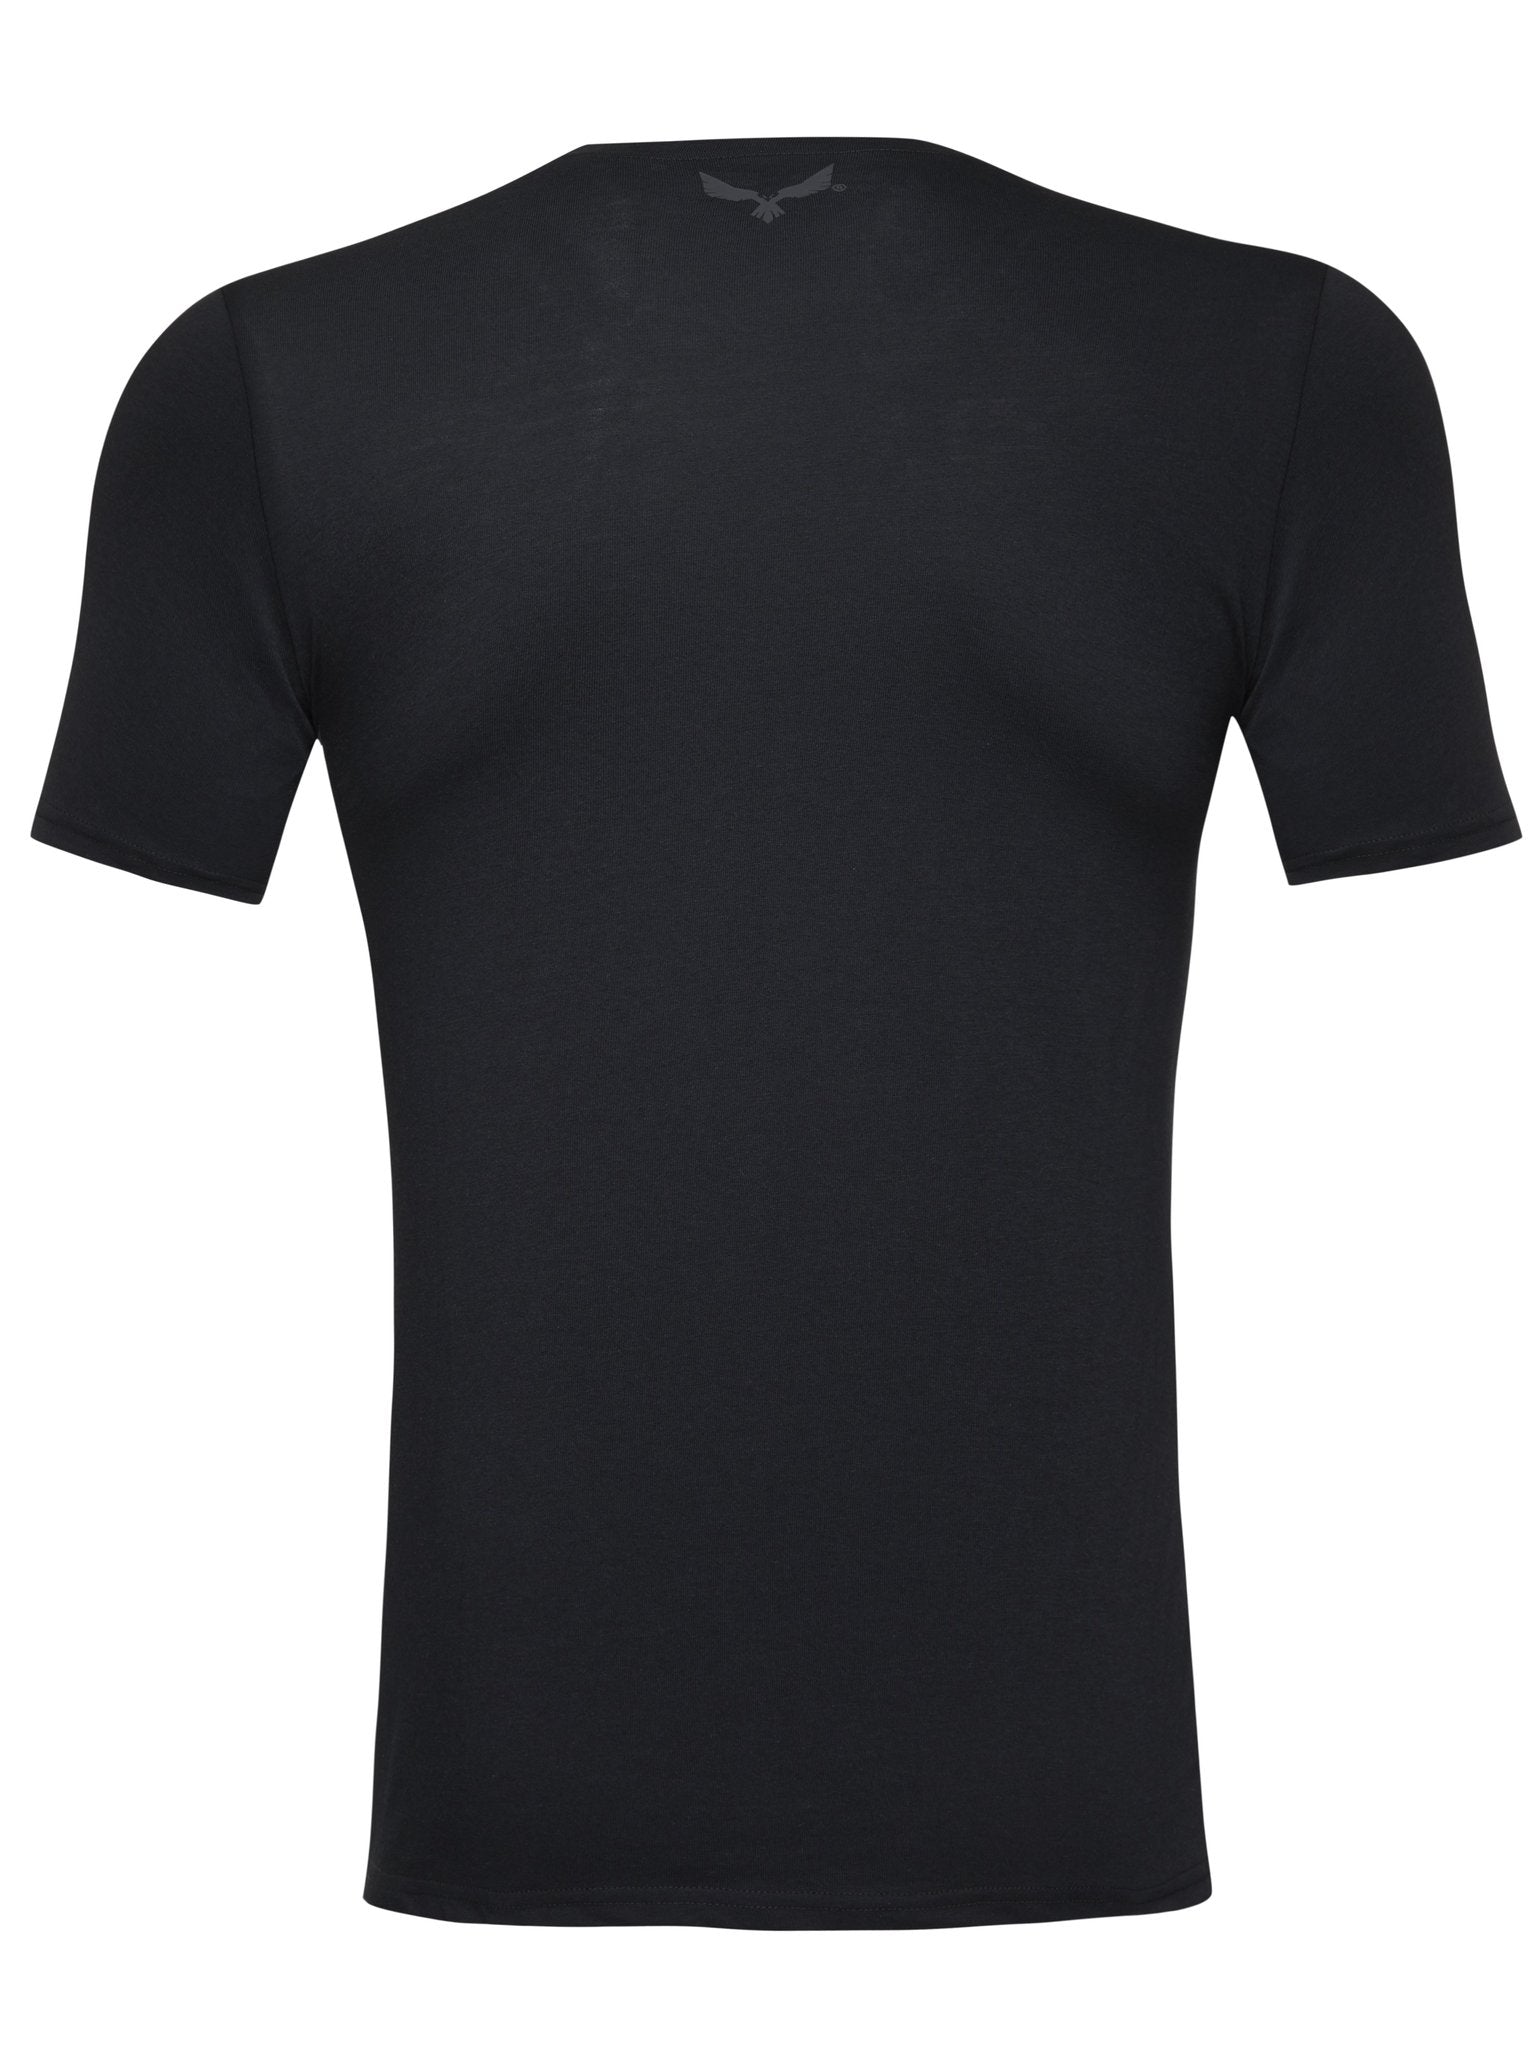 Invictus T-Shirt - Black